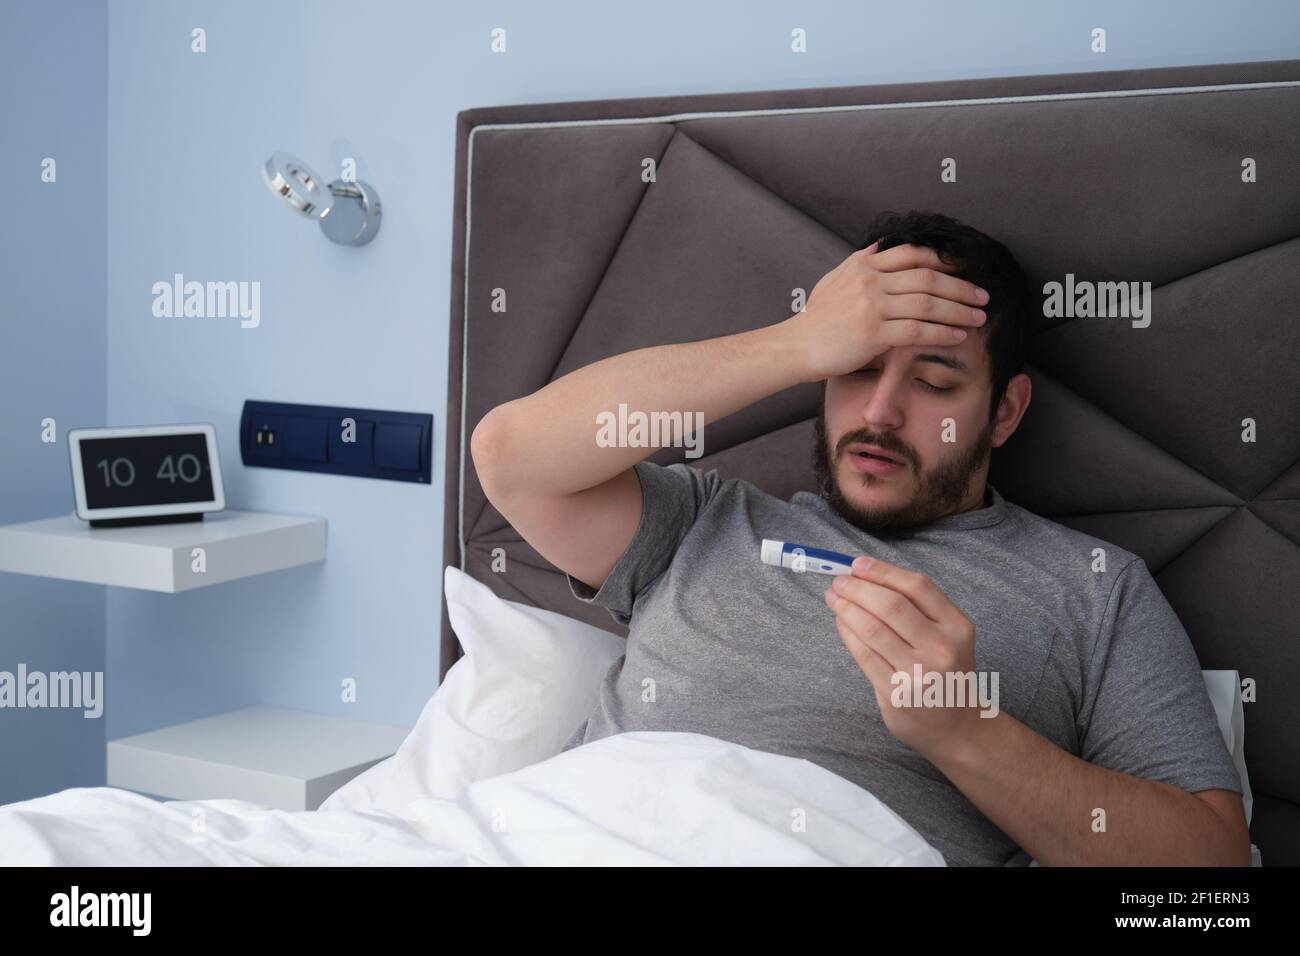 Junger latein krank im Bett mit einem Thermometer in der Hand. Digitale Uhr im Hintergrund. Stockfoto